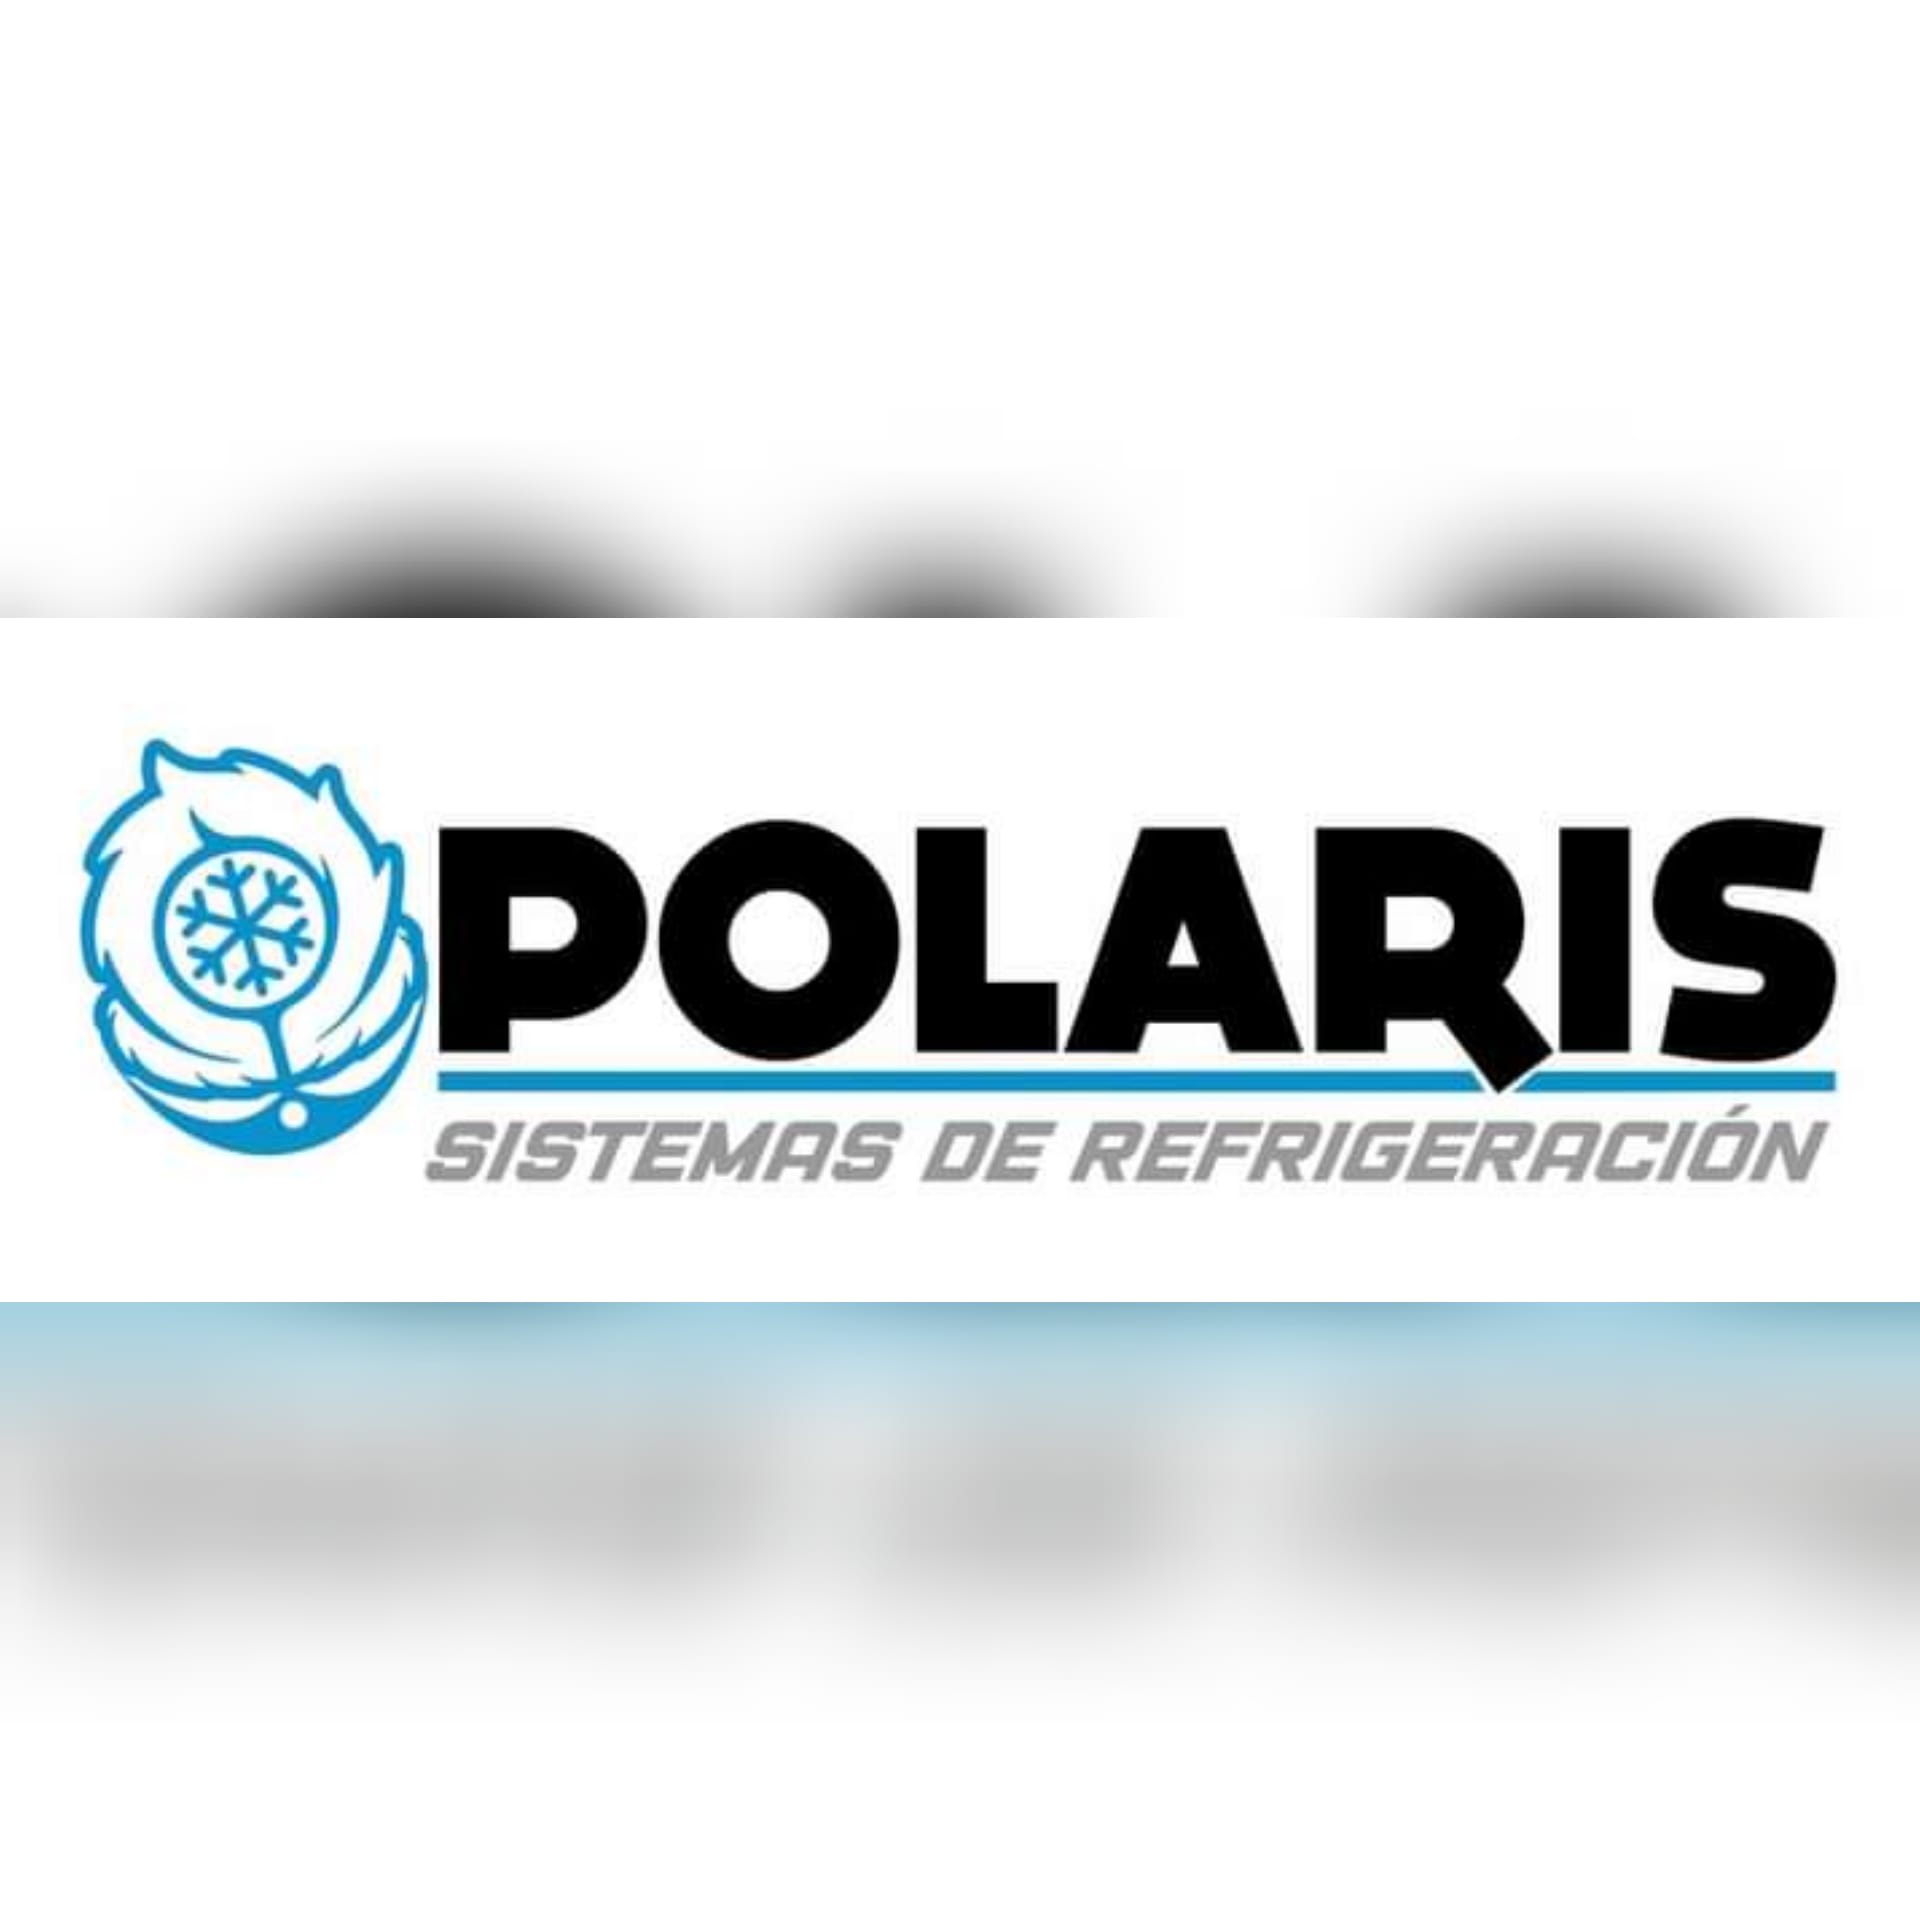 Sistemas de Refrigeración Polaris